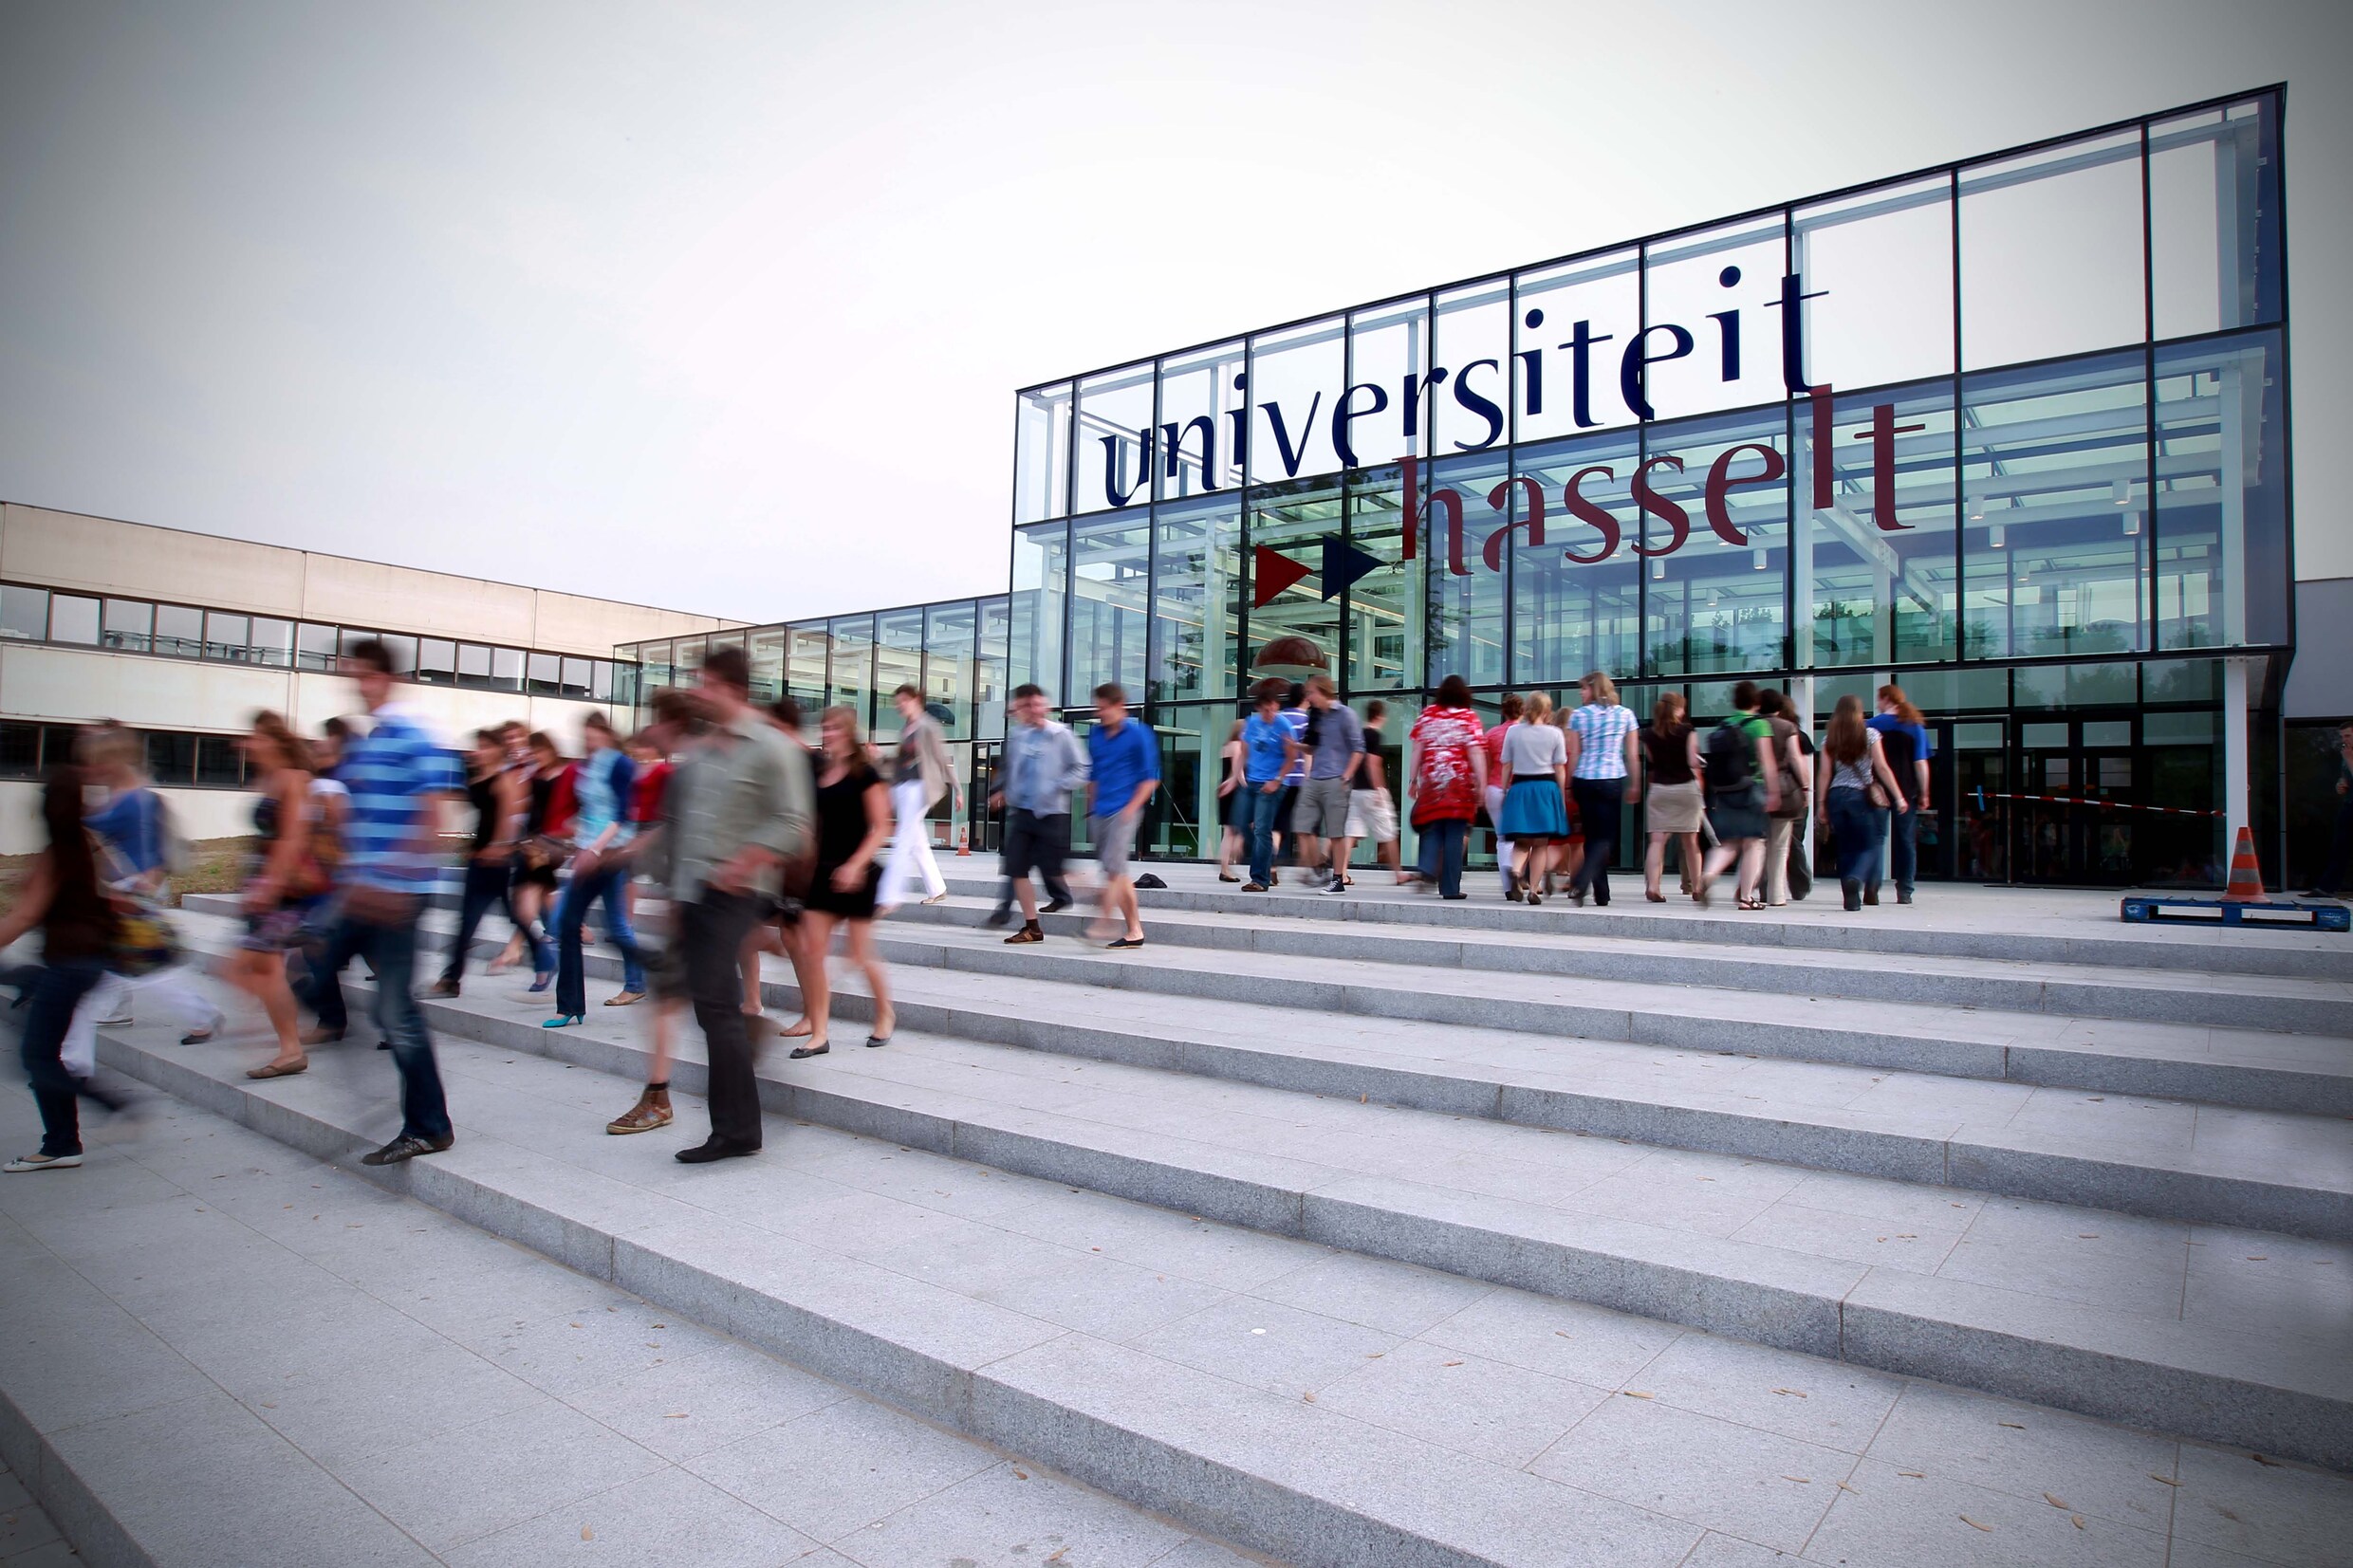 Universiteit Hasselt wil komende jaren fors uitbreiden